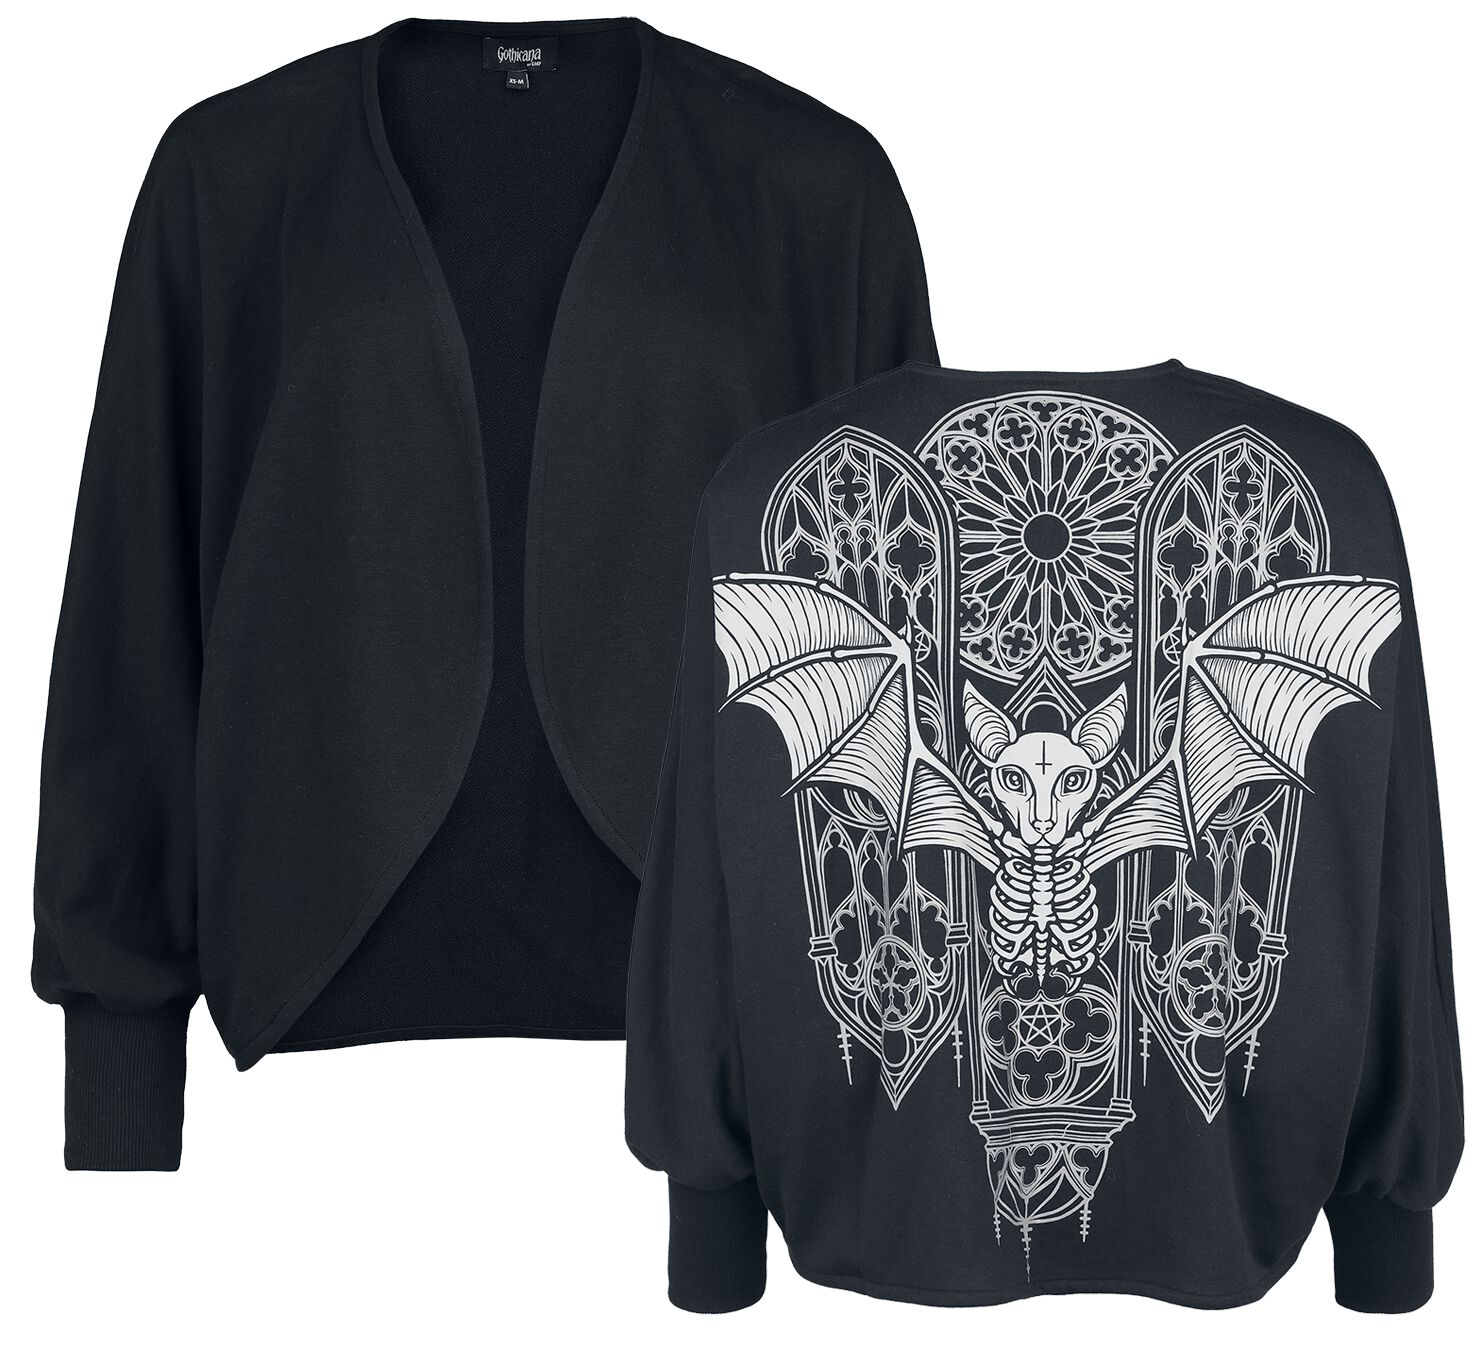 Gothicana by EMP - Gothic Cardigan - Cardigan with Batwing Sleeves - XS-M bis L-2XL - für Damen - Größe L-2XL - schwarz